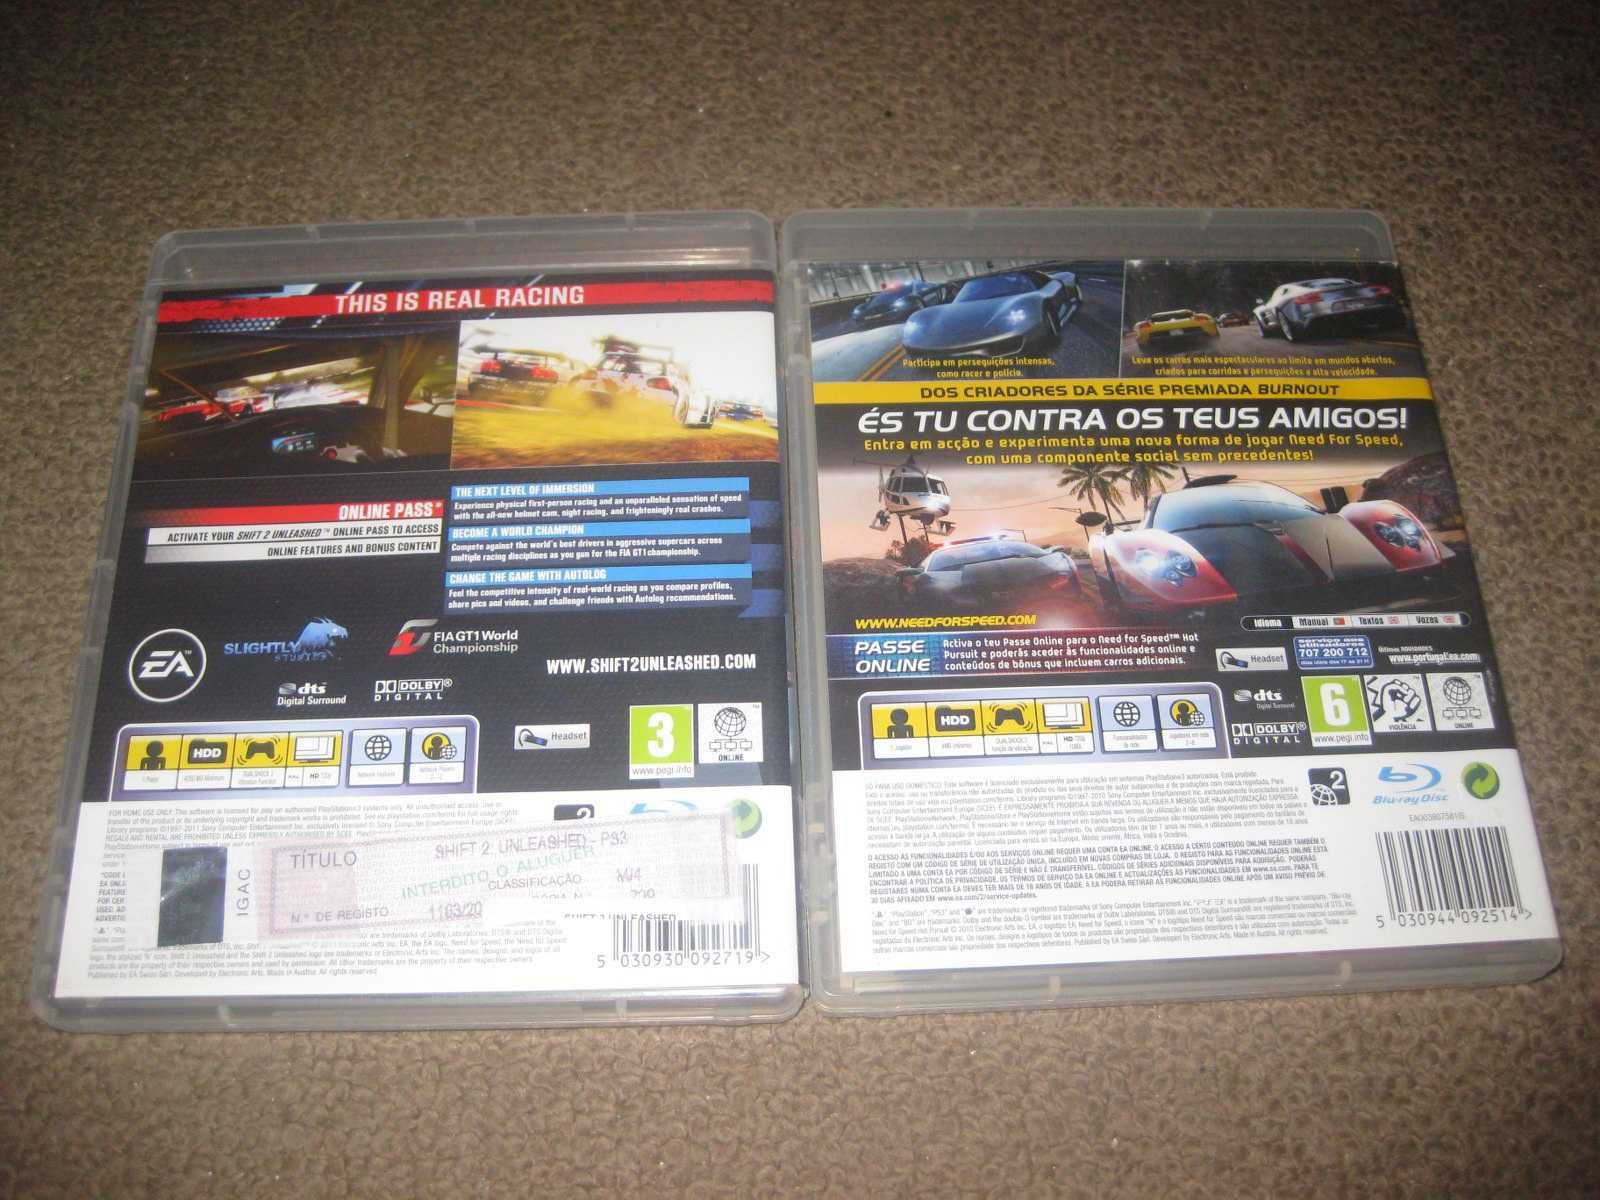 2 Jogos da Saga "Need For Speed" para PS3/Completos!